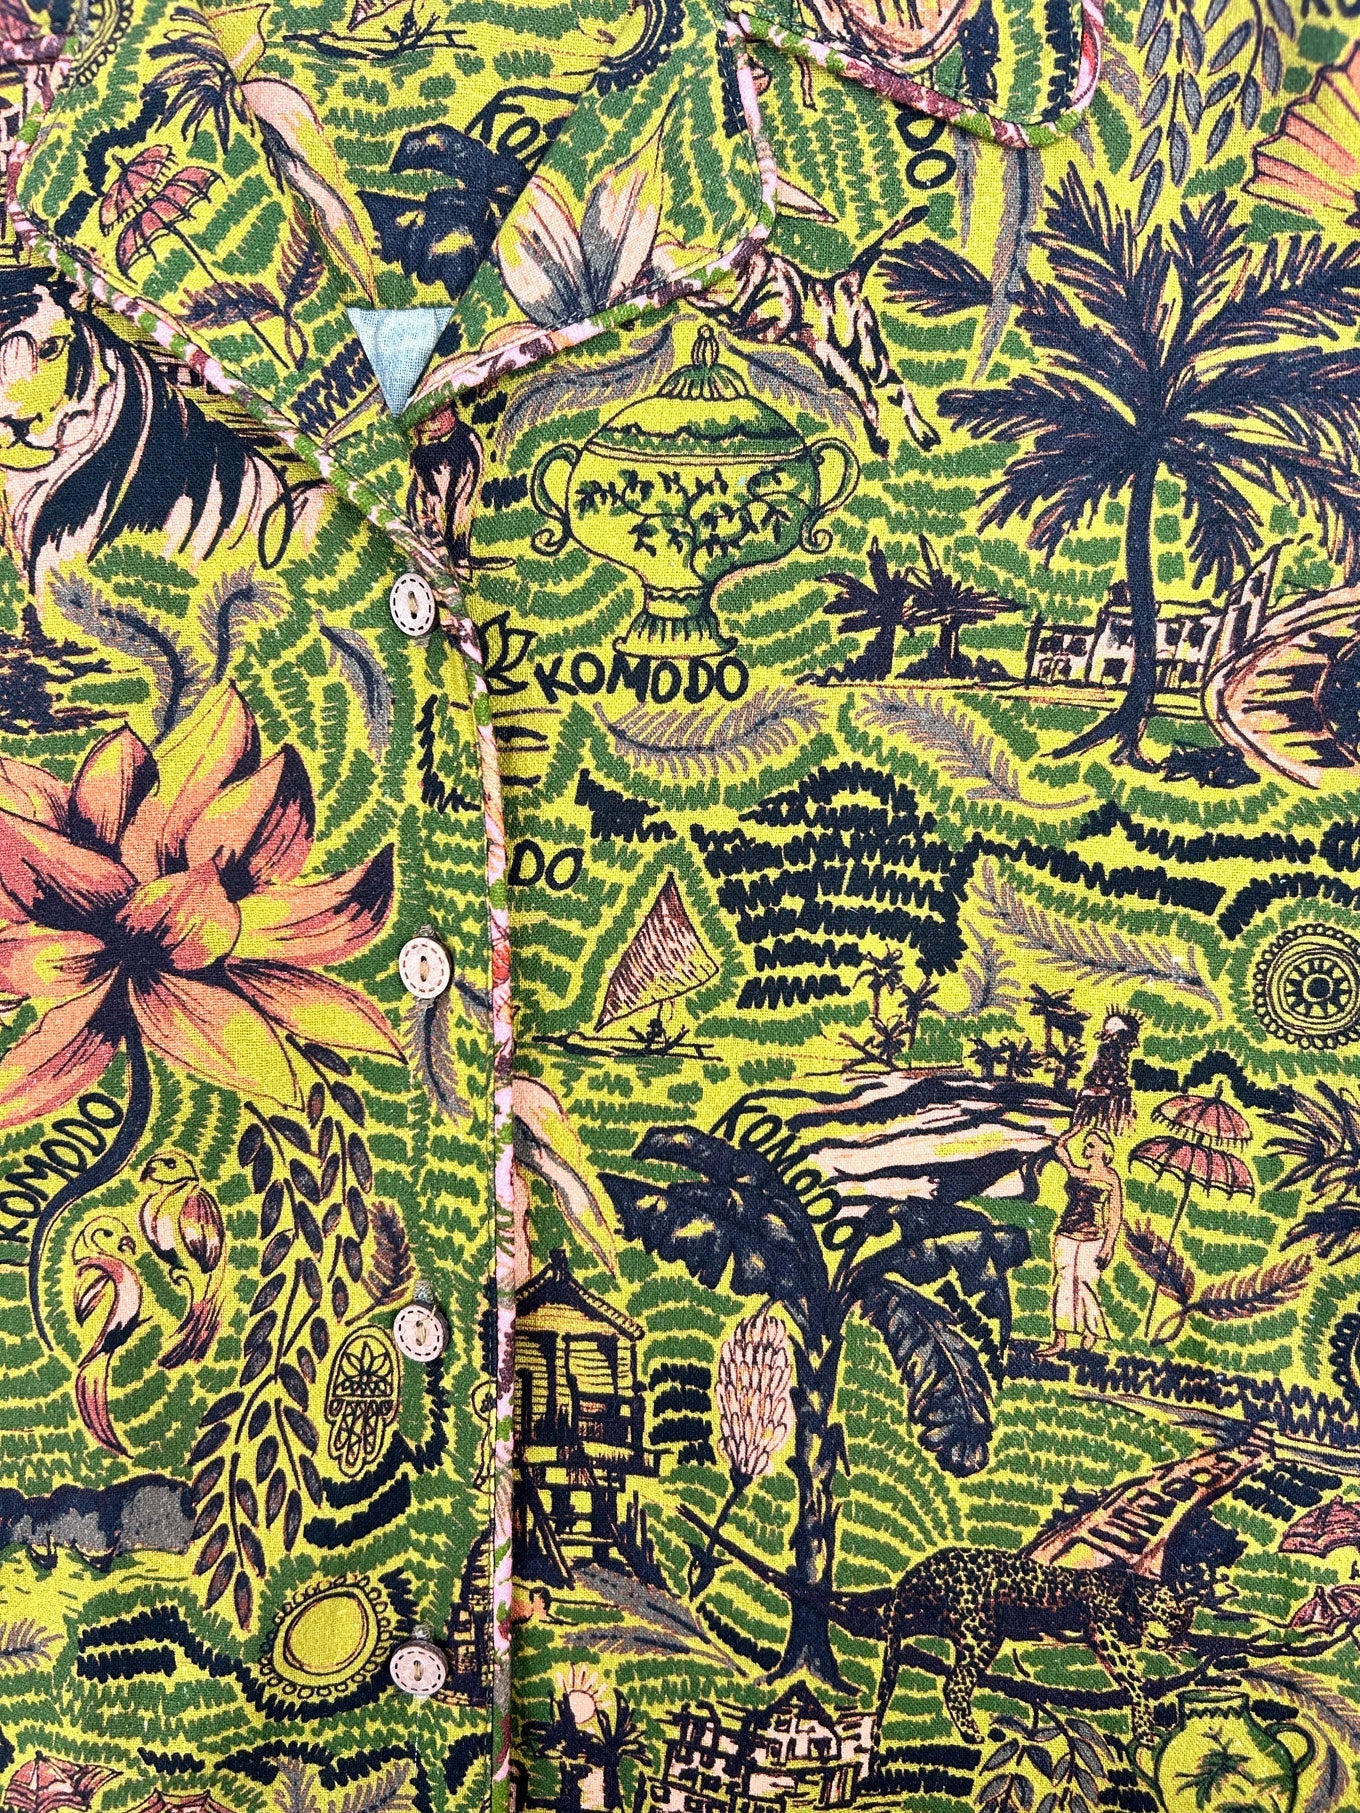 Grünes Hemd Tropical Spindrift aus 100% Baumwolle von Komodo